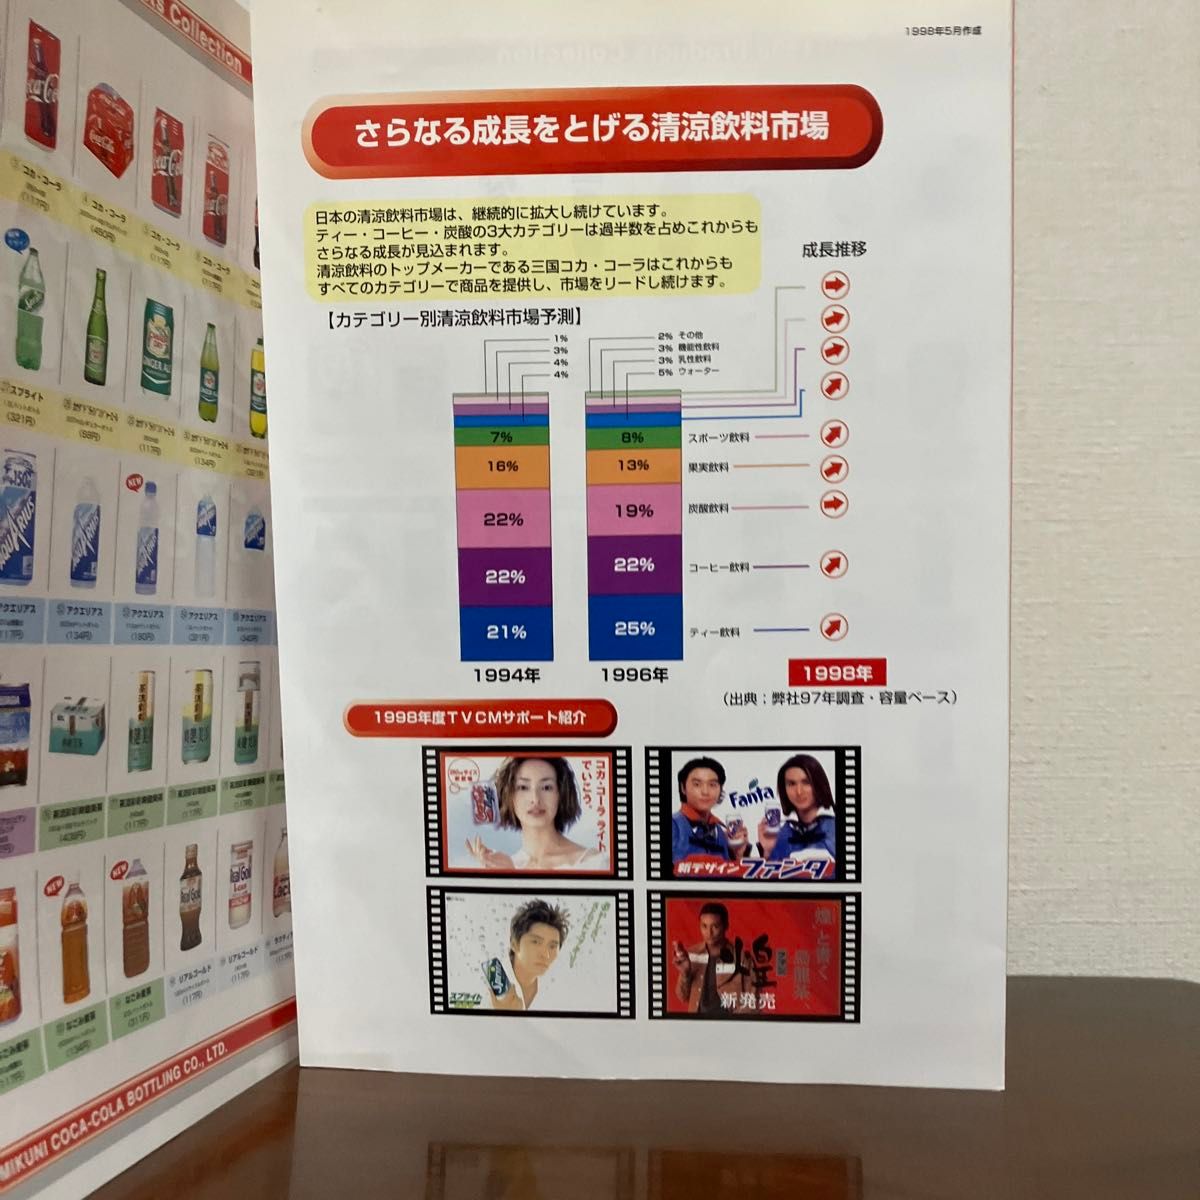 三国コカ・コーラボトリング株式会社 1998年 製品カタログ